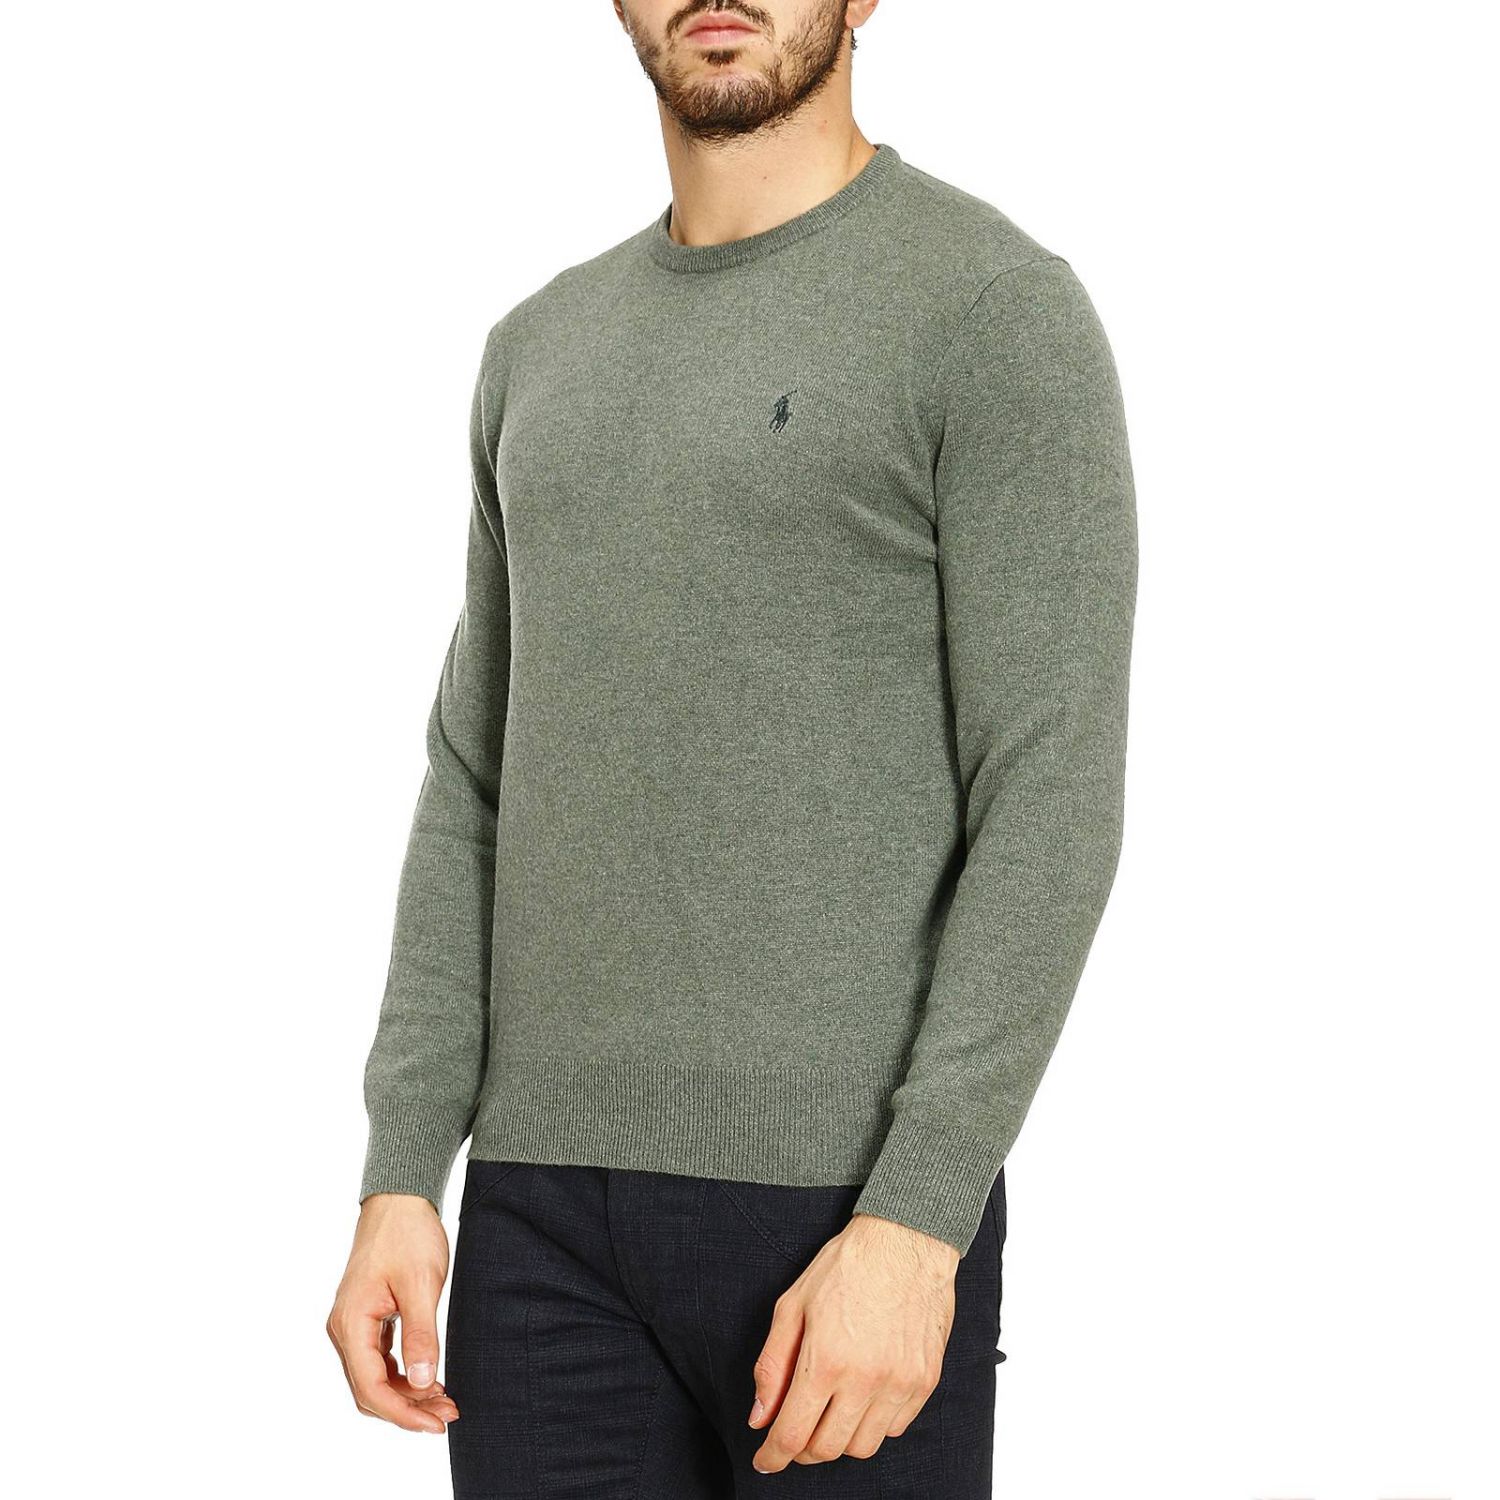 Polo Ralph Lauren Outlet: Sweater men | Sweater Polo Ralph Lauren Men ...